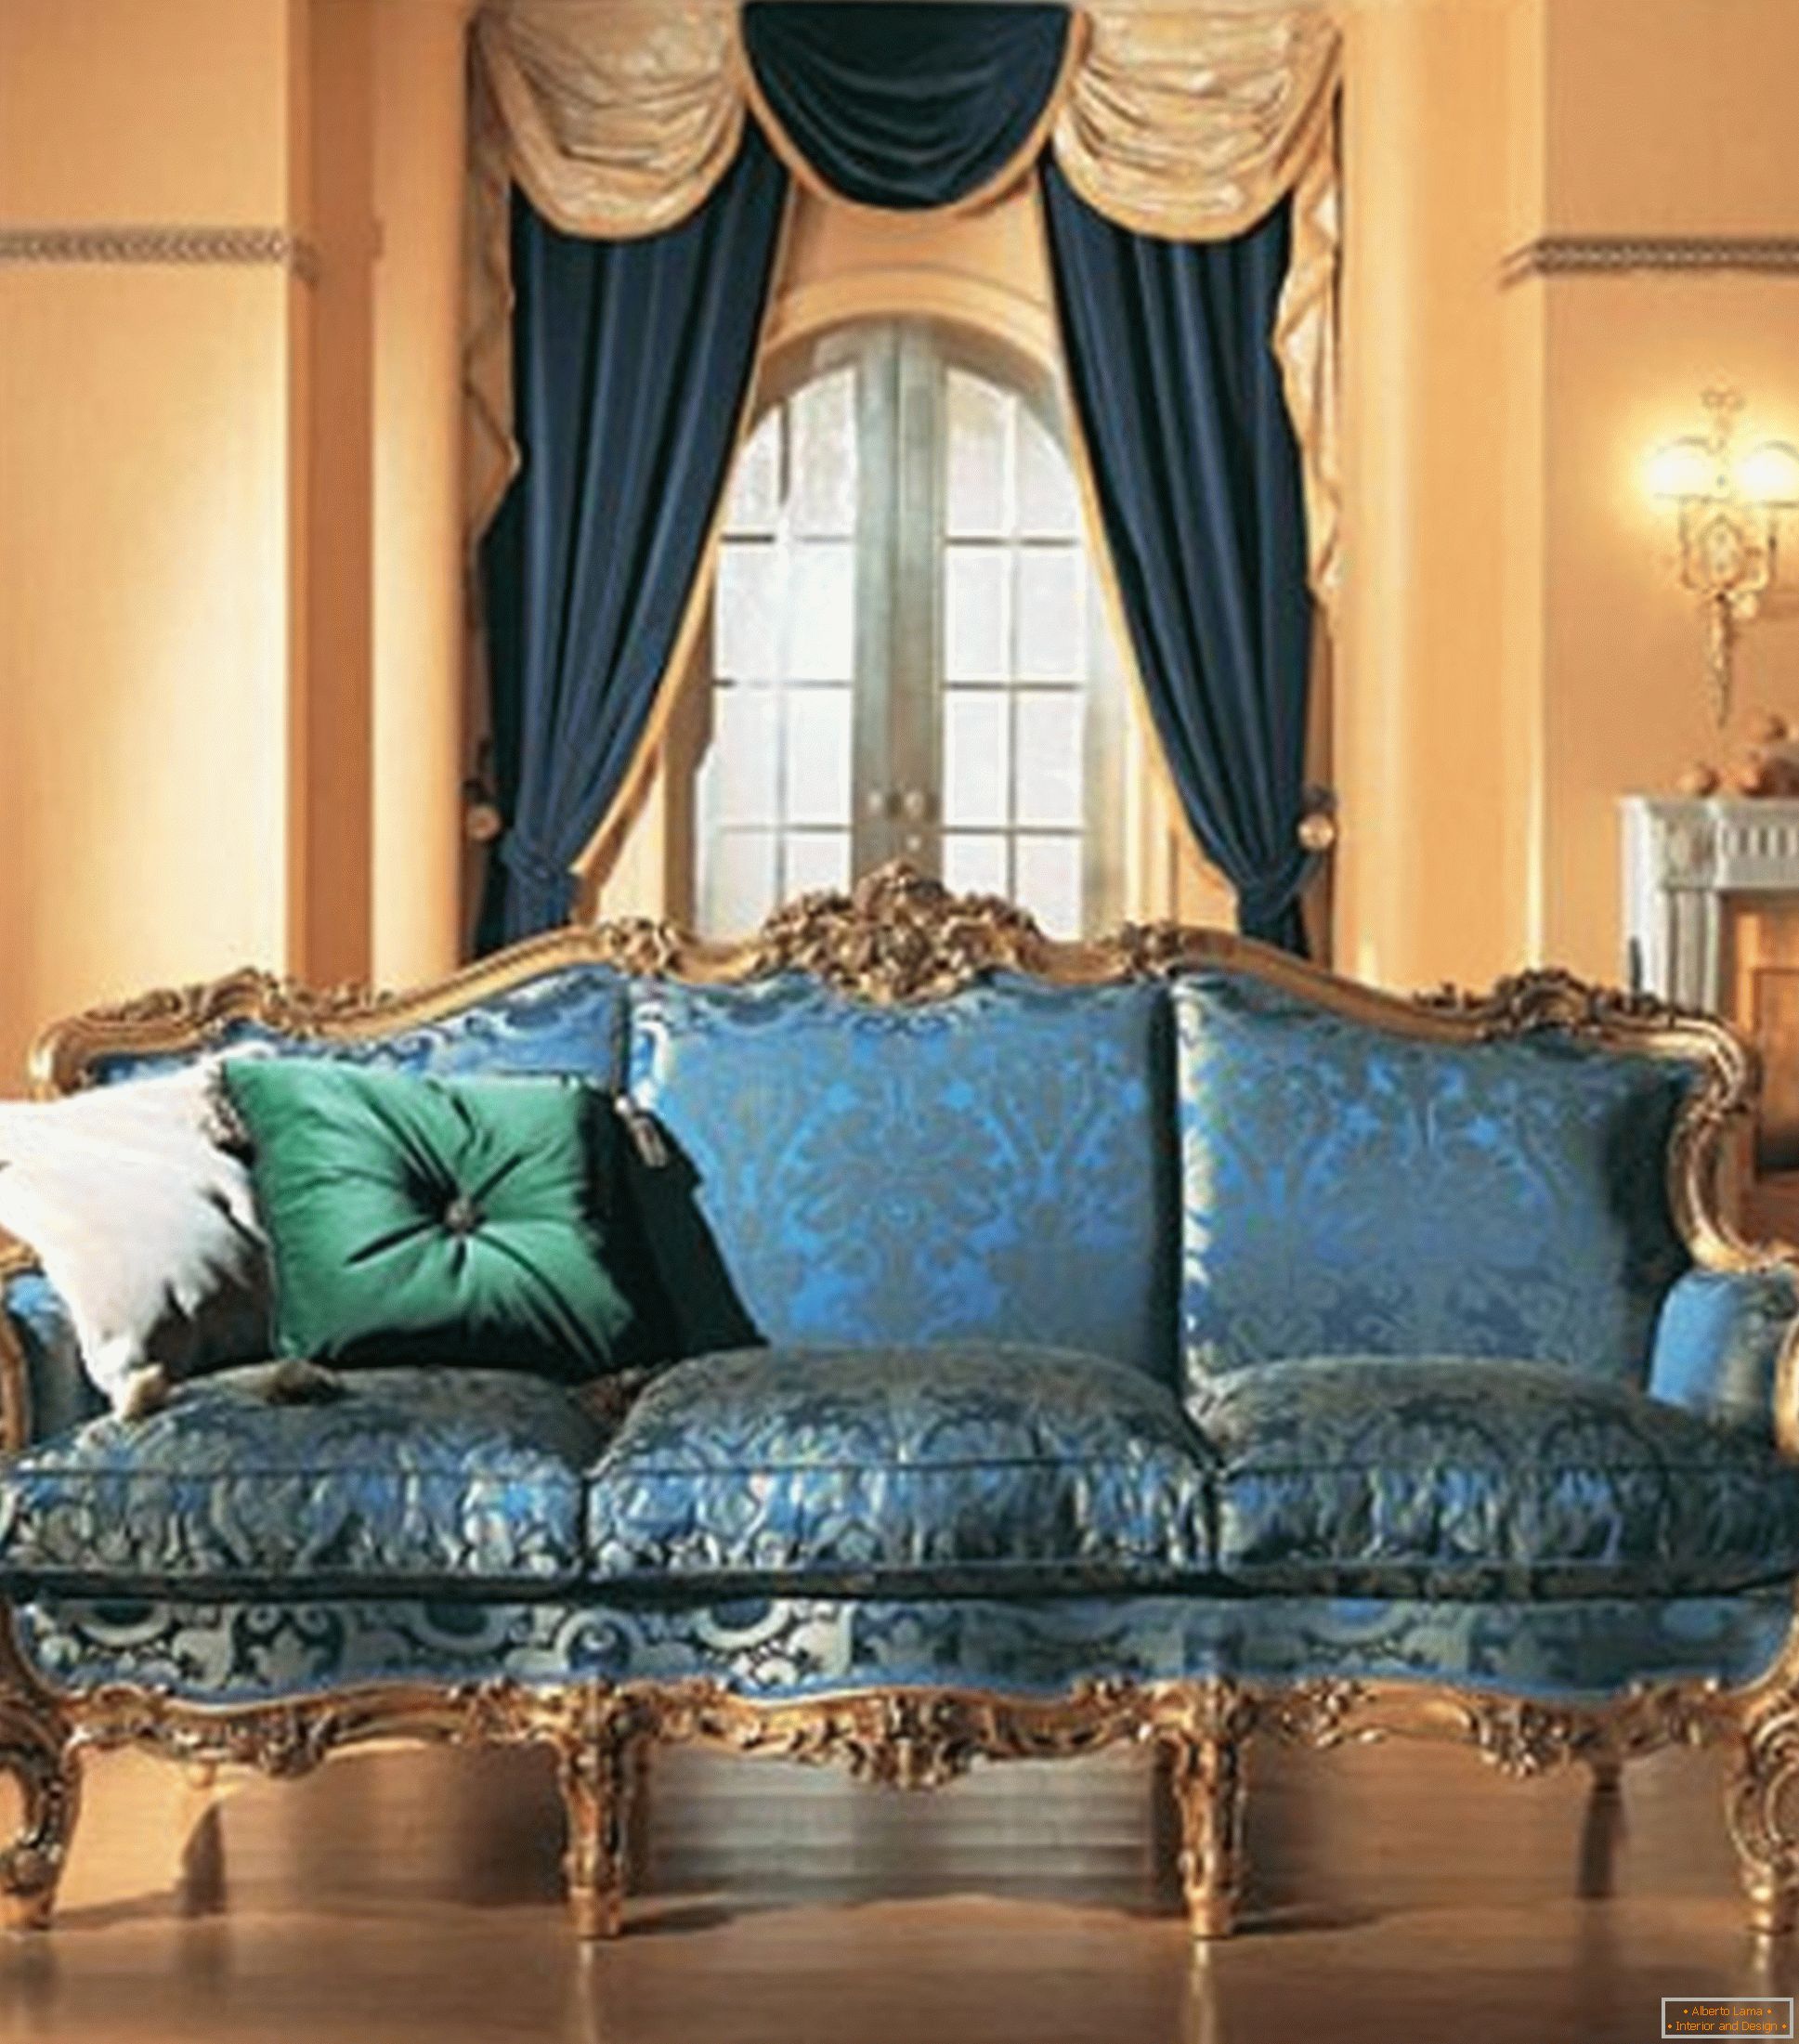 Combinația de culori contrastante în decorarea camerei de zi în stil baroc.